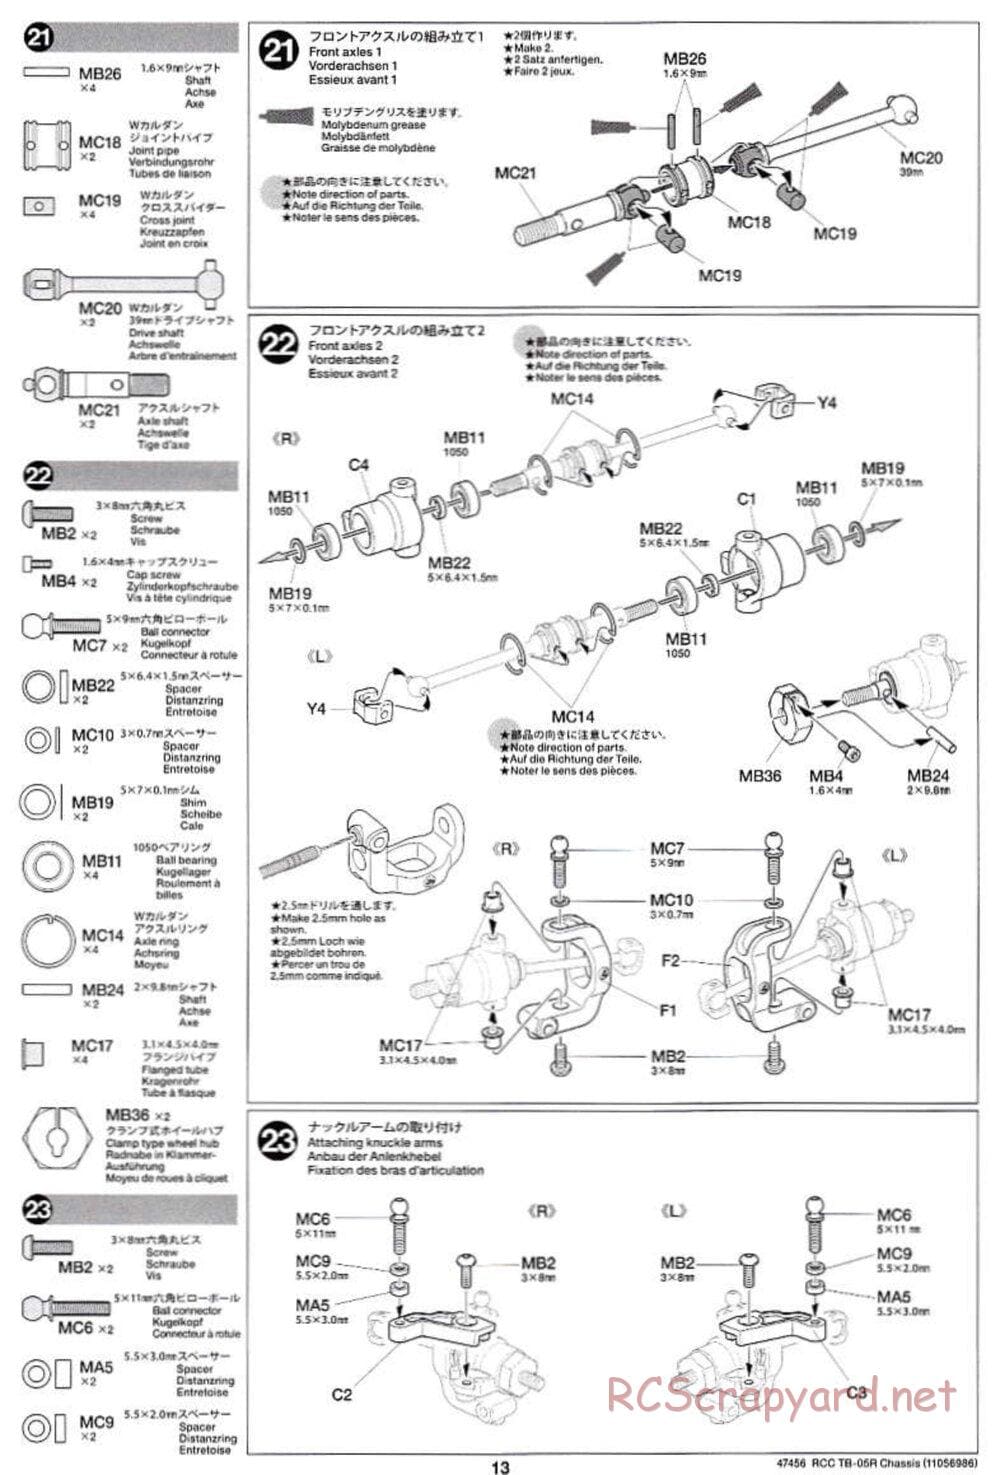 Tamiya - TB-05R Chassis - Manual - Page 13